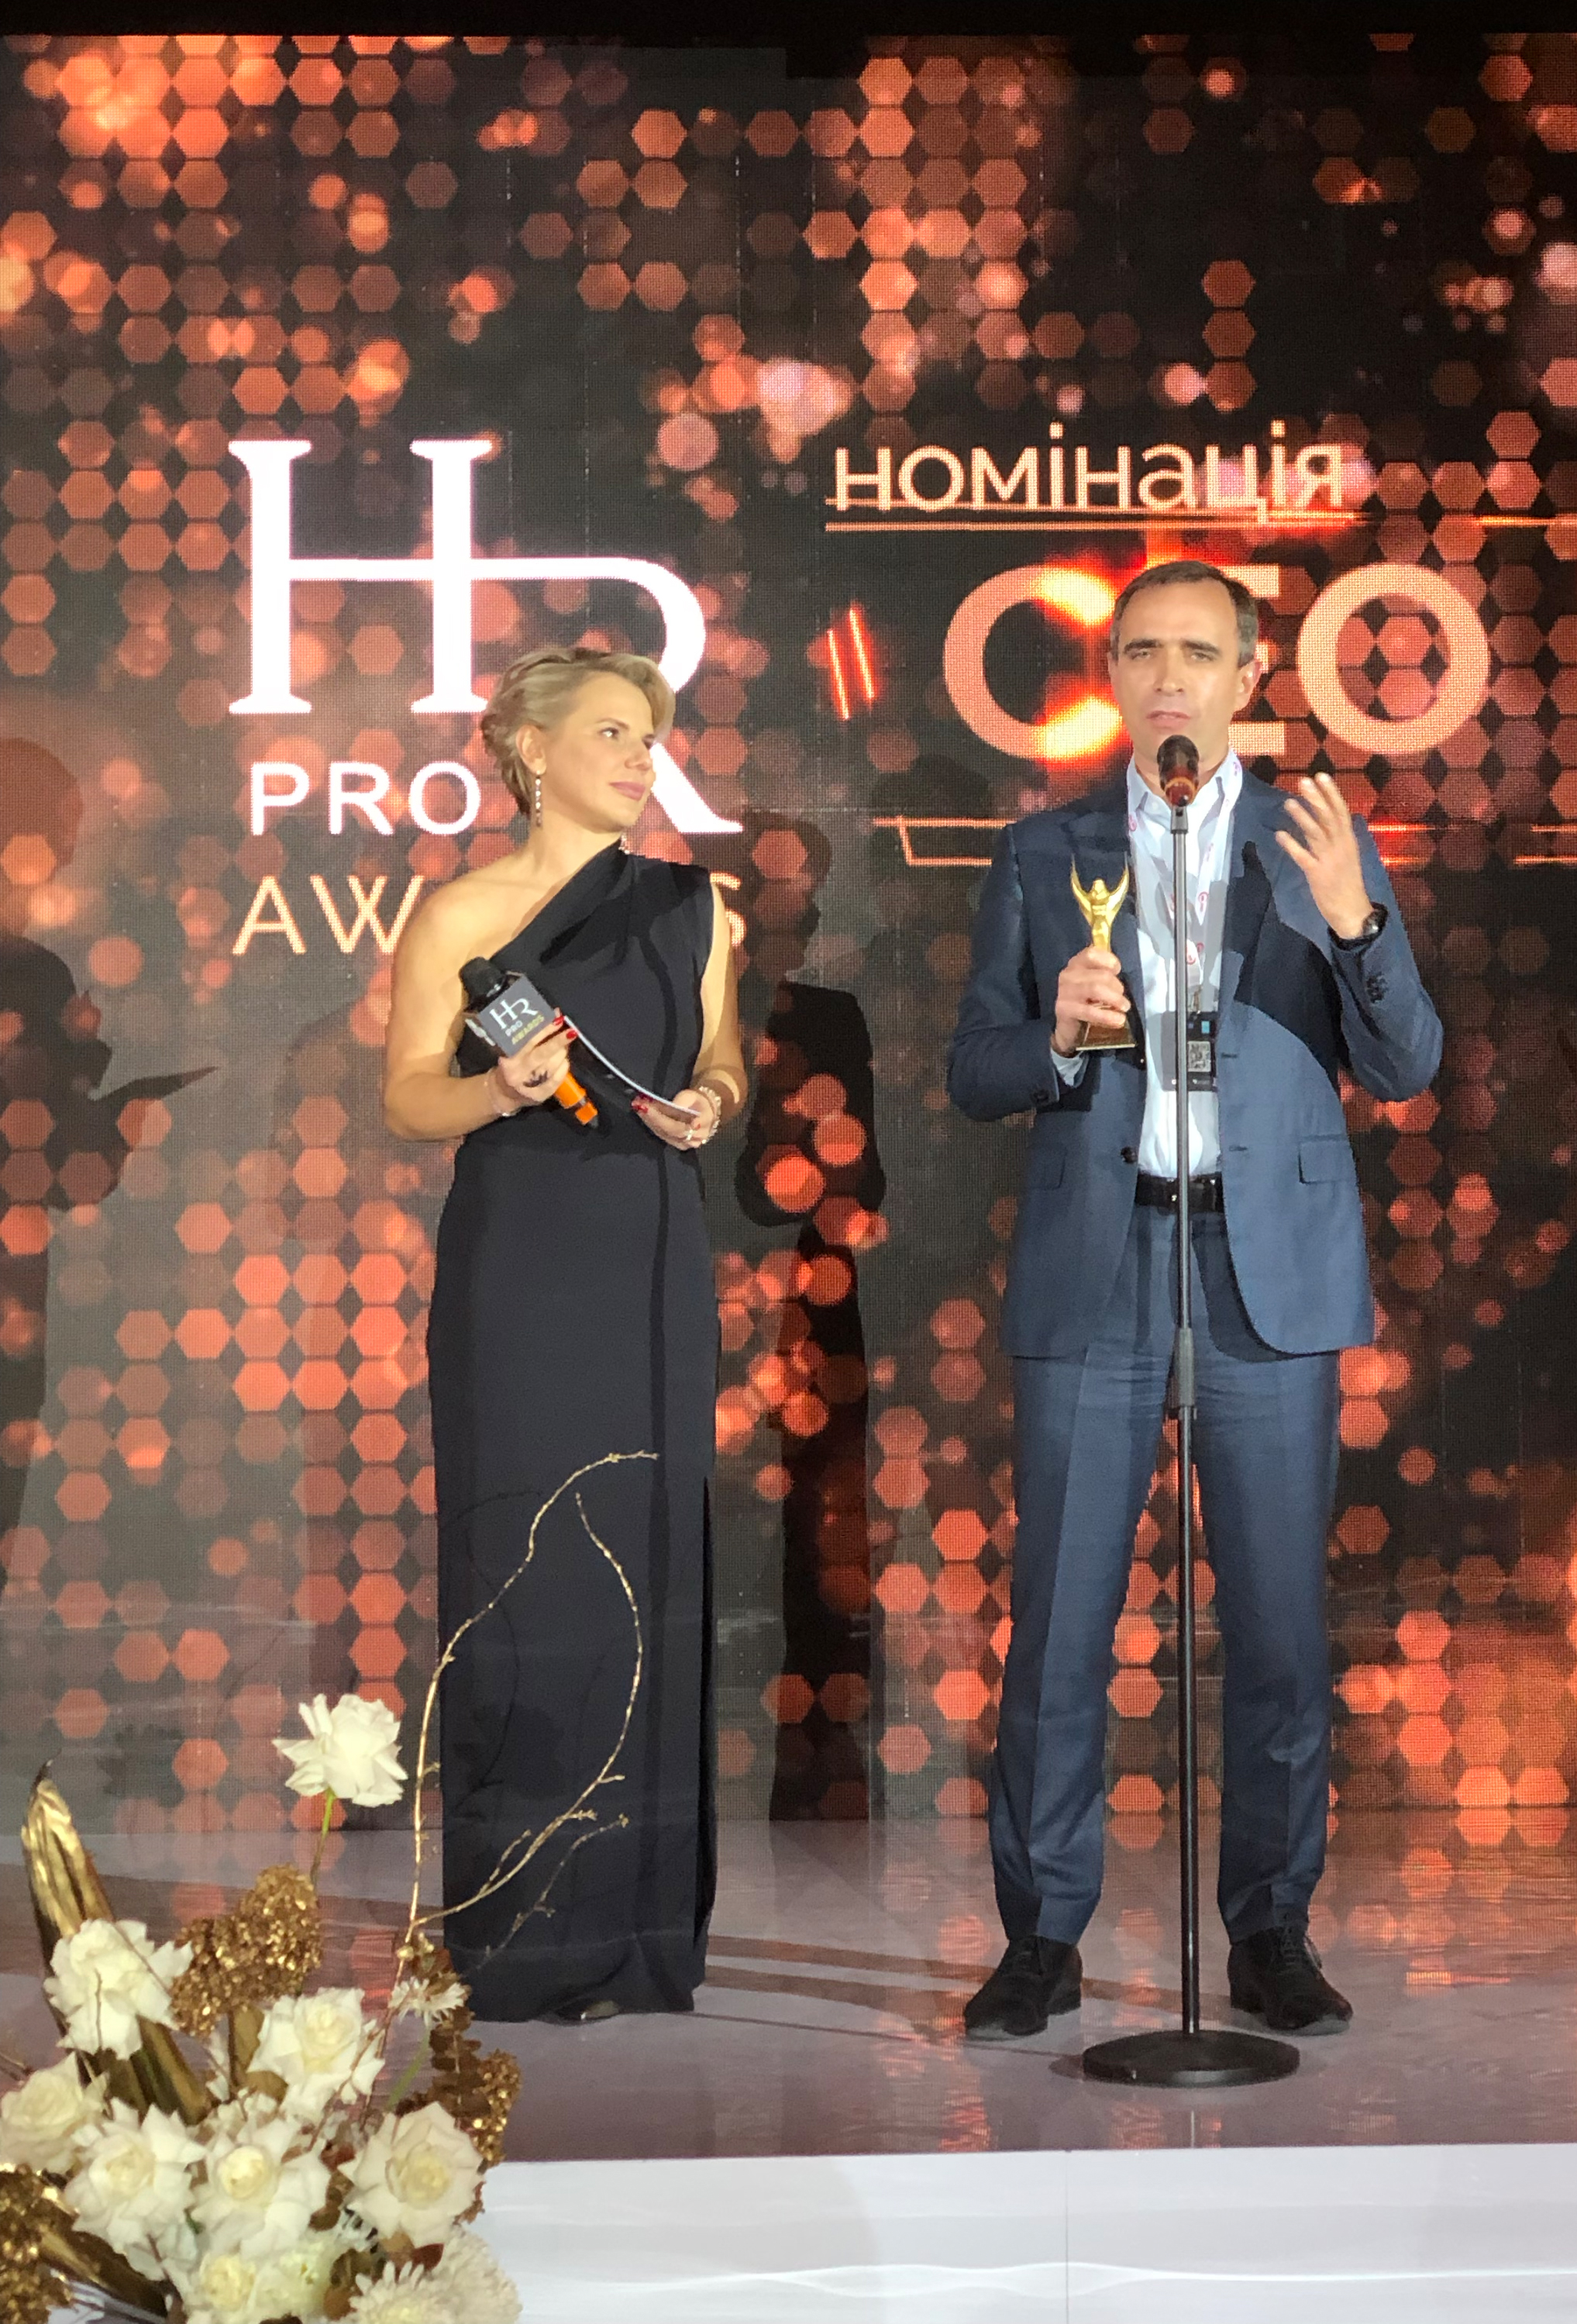 Председатель правления ПУМБ Сергей Черненко получил награду на HR Pro Awards 2021